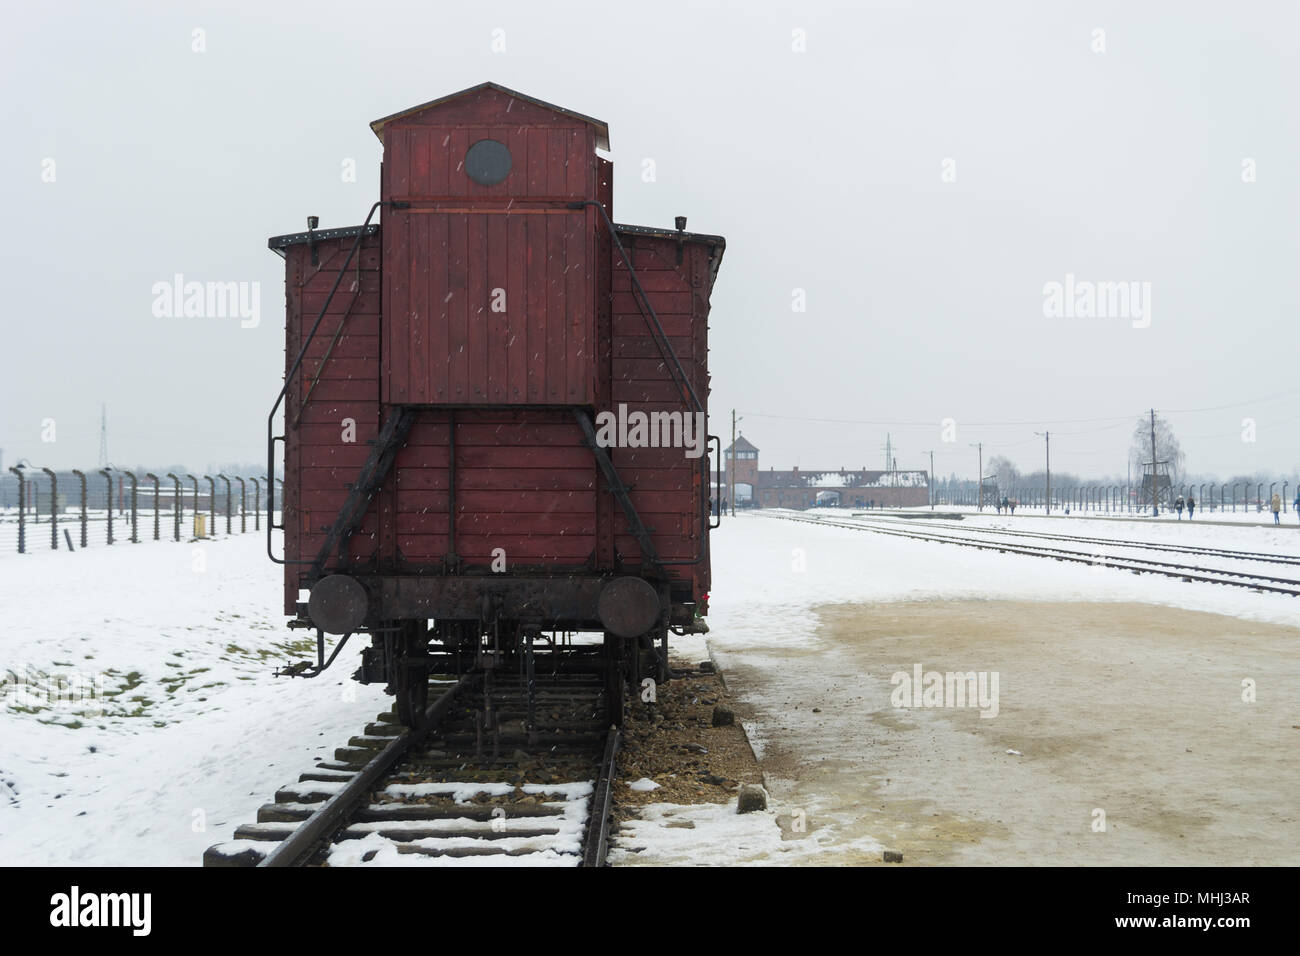 Scène hivernale à Auschwizt II Birkenau Camp de concentration - Pologne Banque D'Images